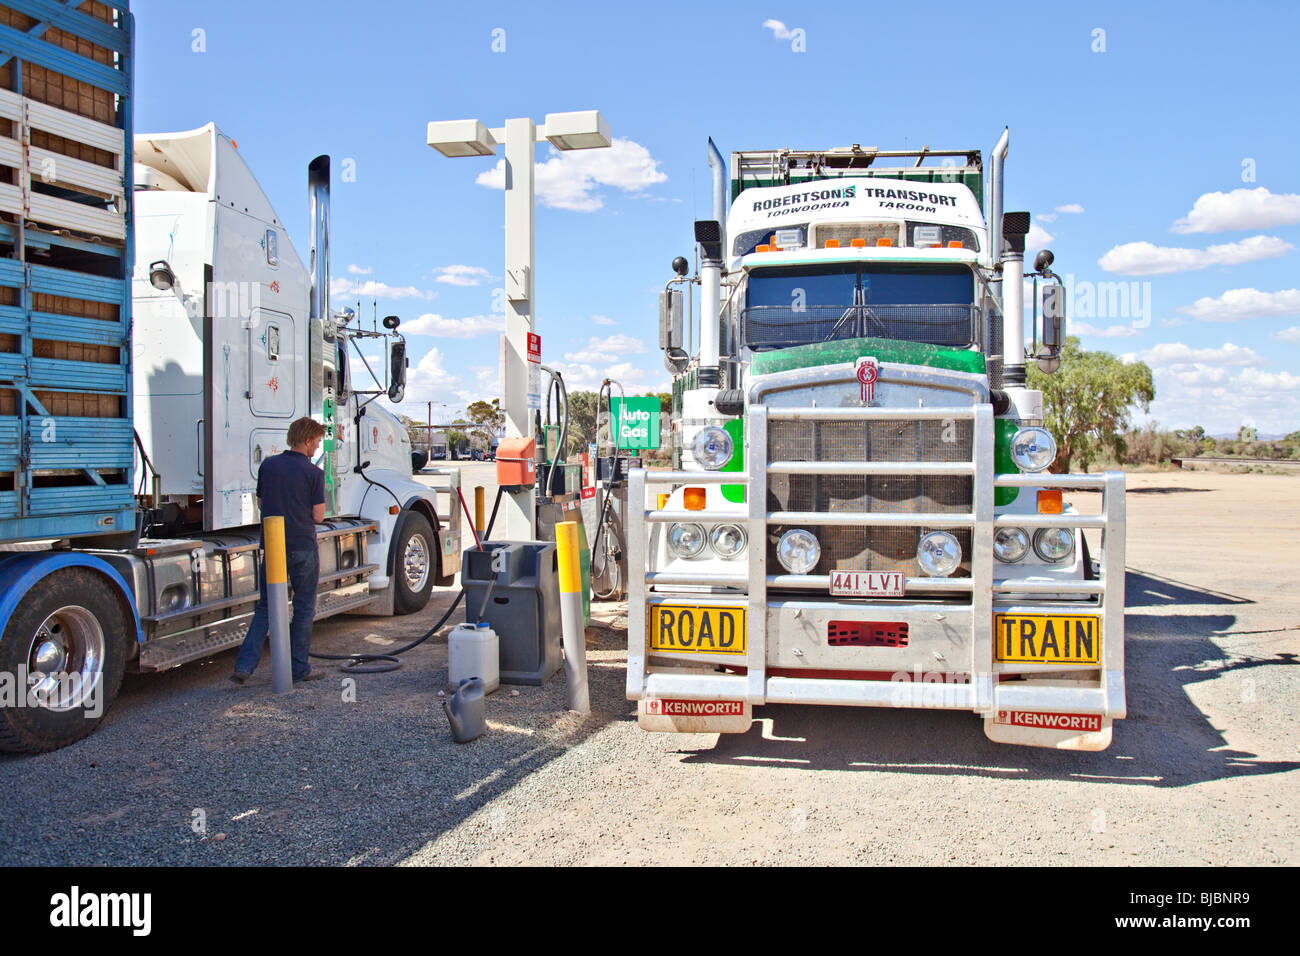 Tren de carretera en una estación de gasolina, la Yunta, South Australia Foto de stock